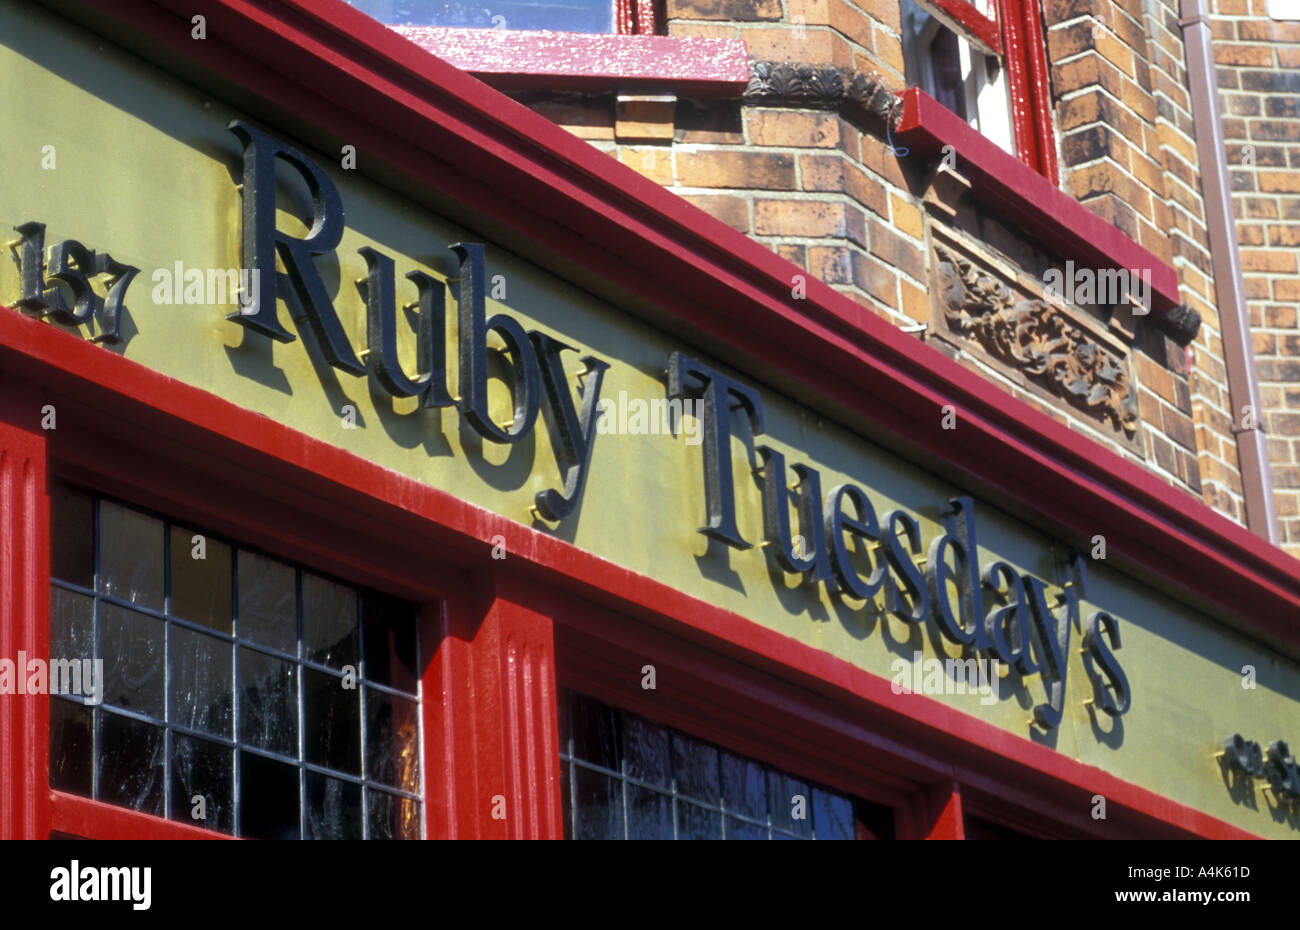 Ruby Dienstag Restaurant und Bar Stranmillis Straße Belfast Nordirland Vereinigtes Königreich UK Europe Stockfoto